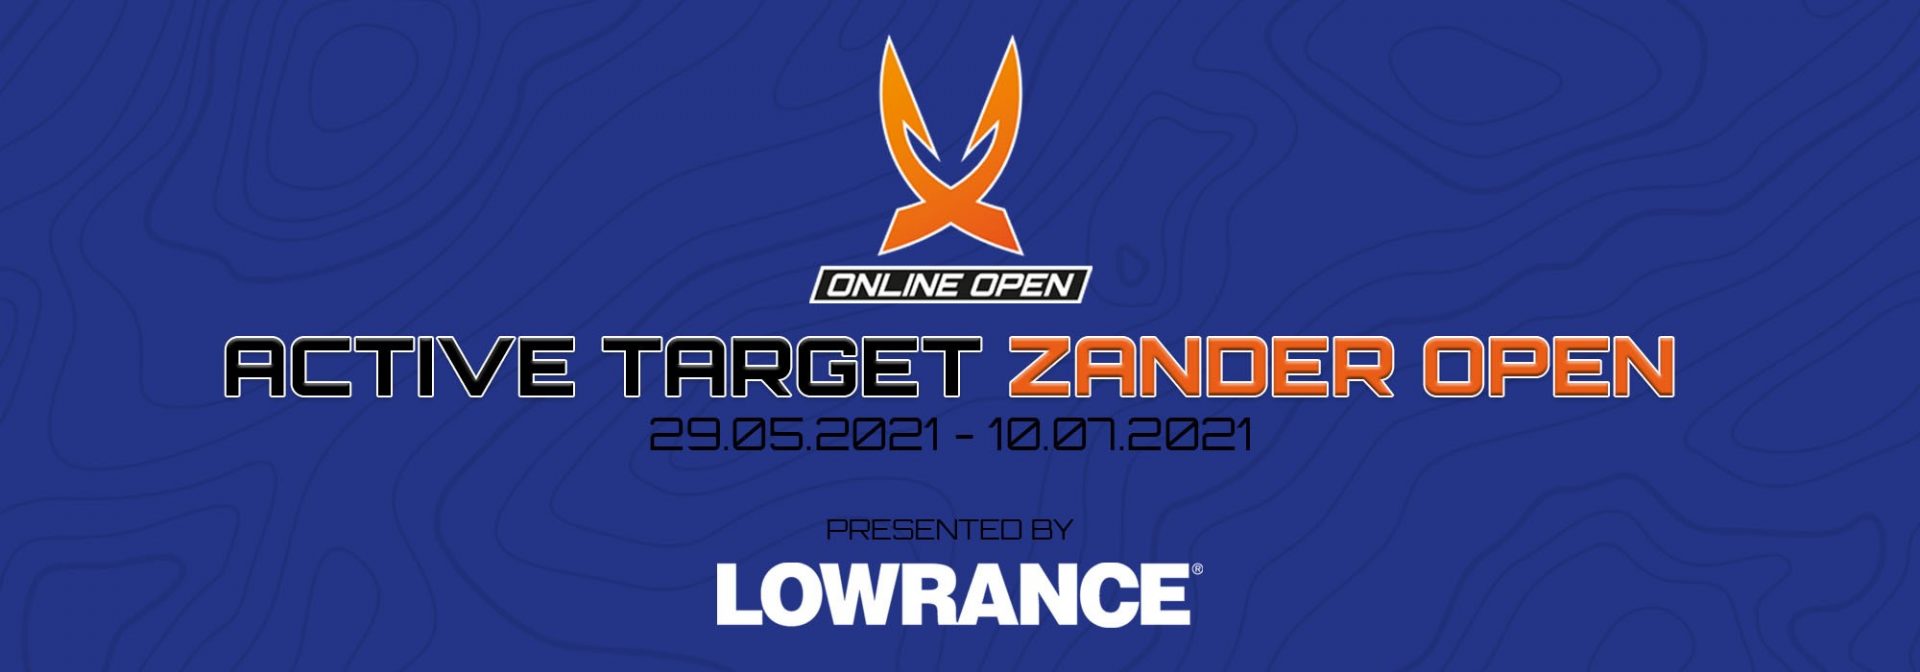 Active Target Zander Open